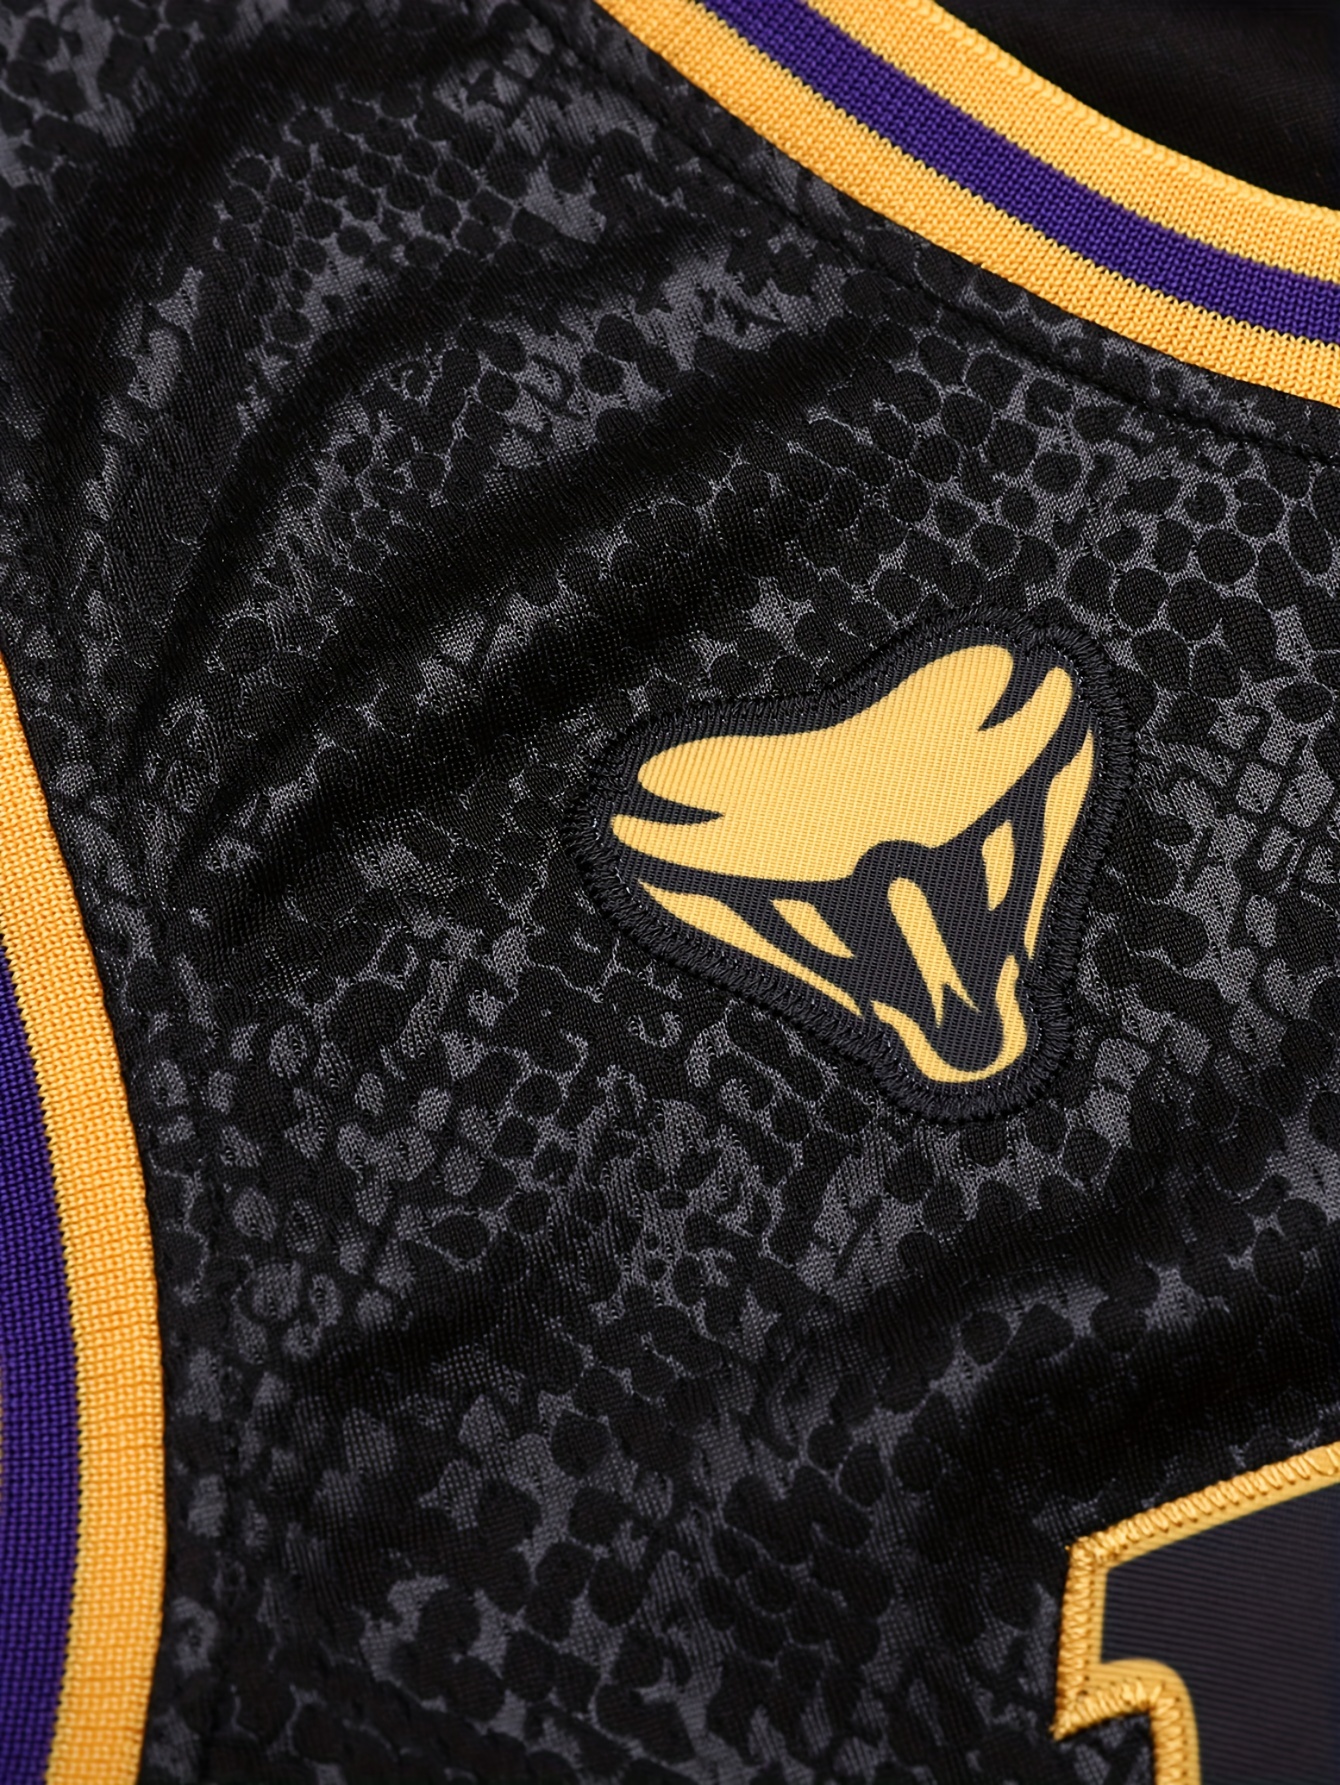 Design Bryant #24 Mamba #8 Snake Skin Edition Basketball Jersey Shirt  Stitched